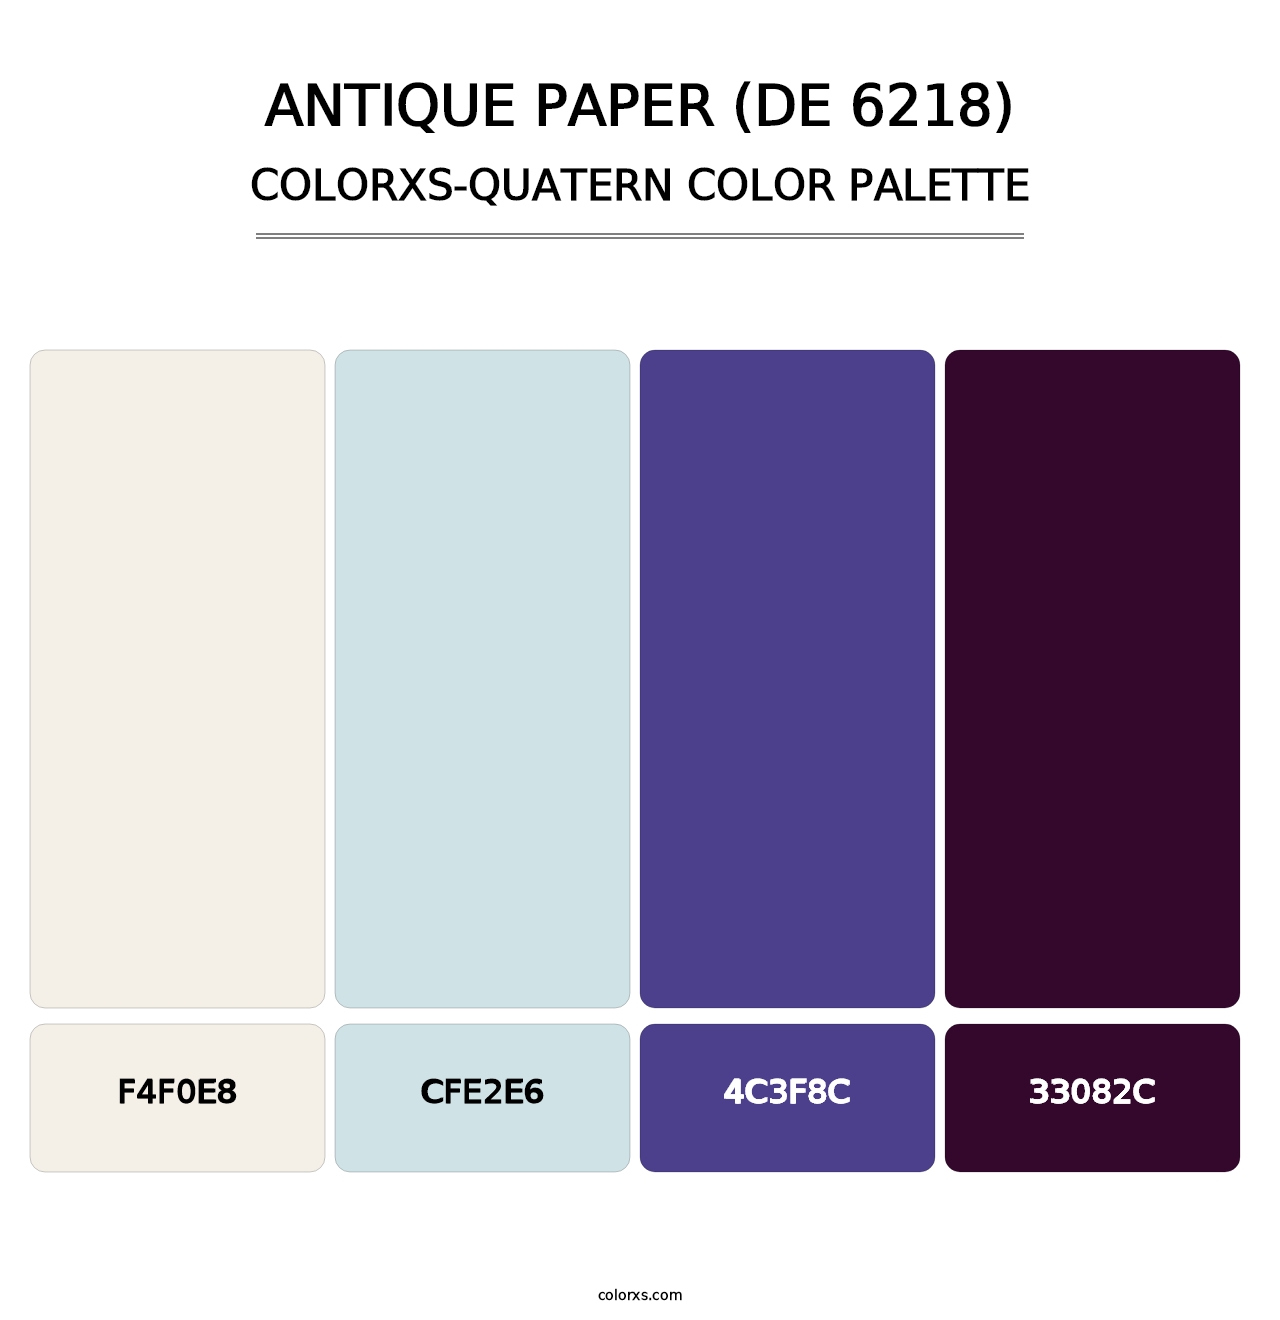 Antique Paper (DE 6218) - Colorxs Quatern Palette